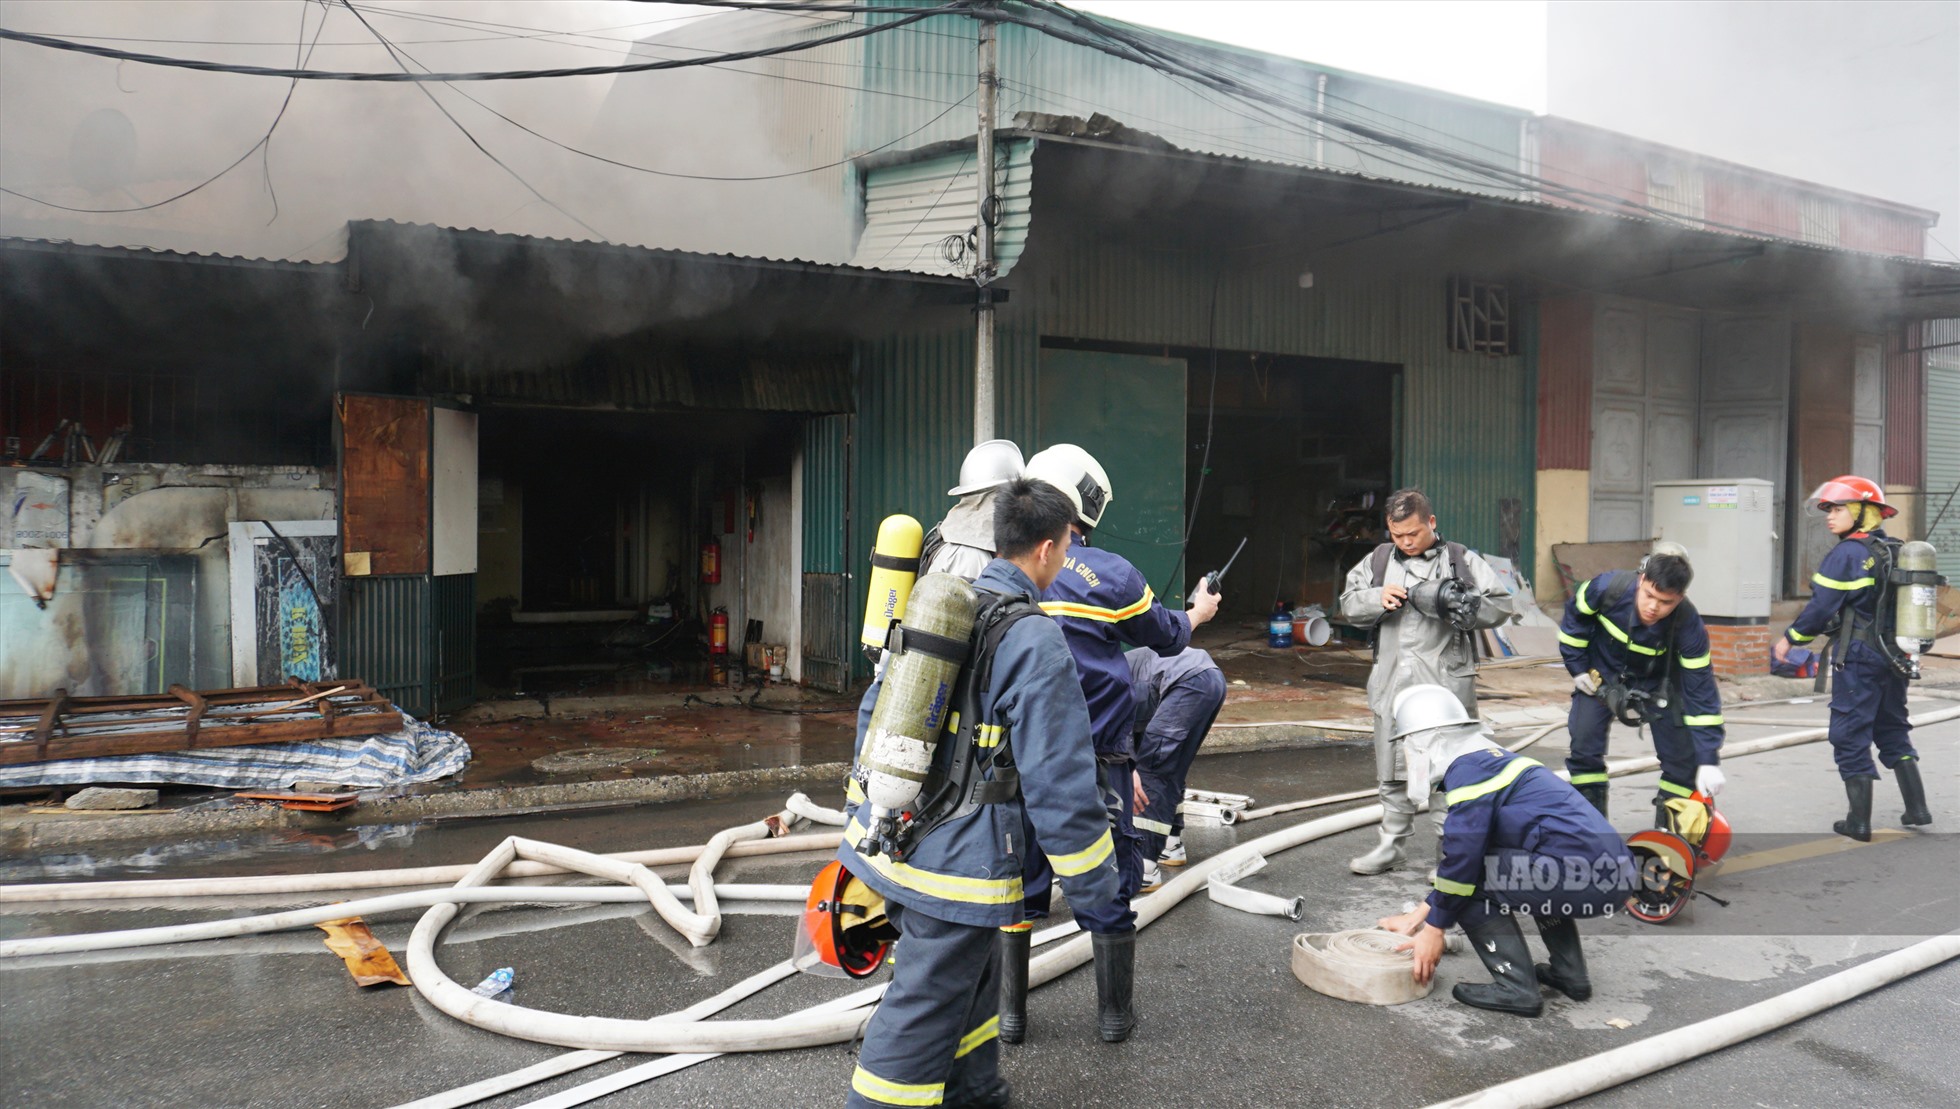 Sau khi nhận được thông tin, lực lượng Cảnh sát Phòng cháy chữa cháy và Cứu nạn cứu hộ quận Hoàng Mai và quận Hai Bà Trưng  đã phối hợp và huy động cán bộ chiến sĩ tiếp cận hiện trường.